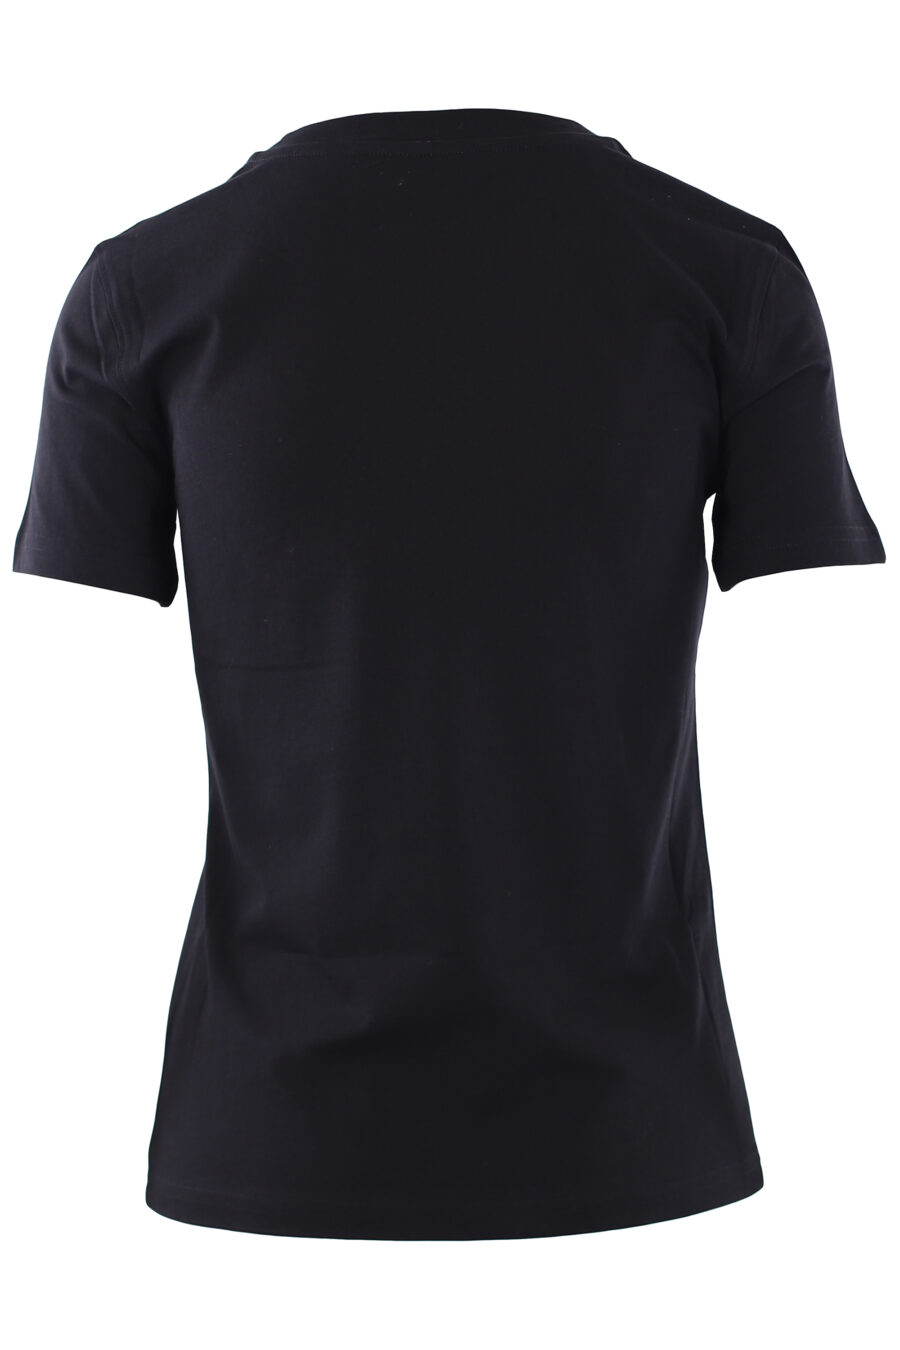 Camiseta negra con logo escudo de oso - IMG 0260